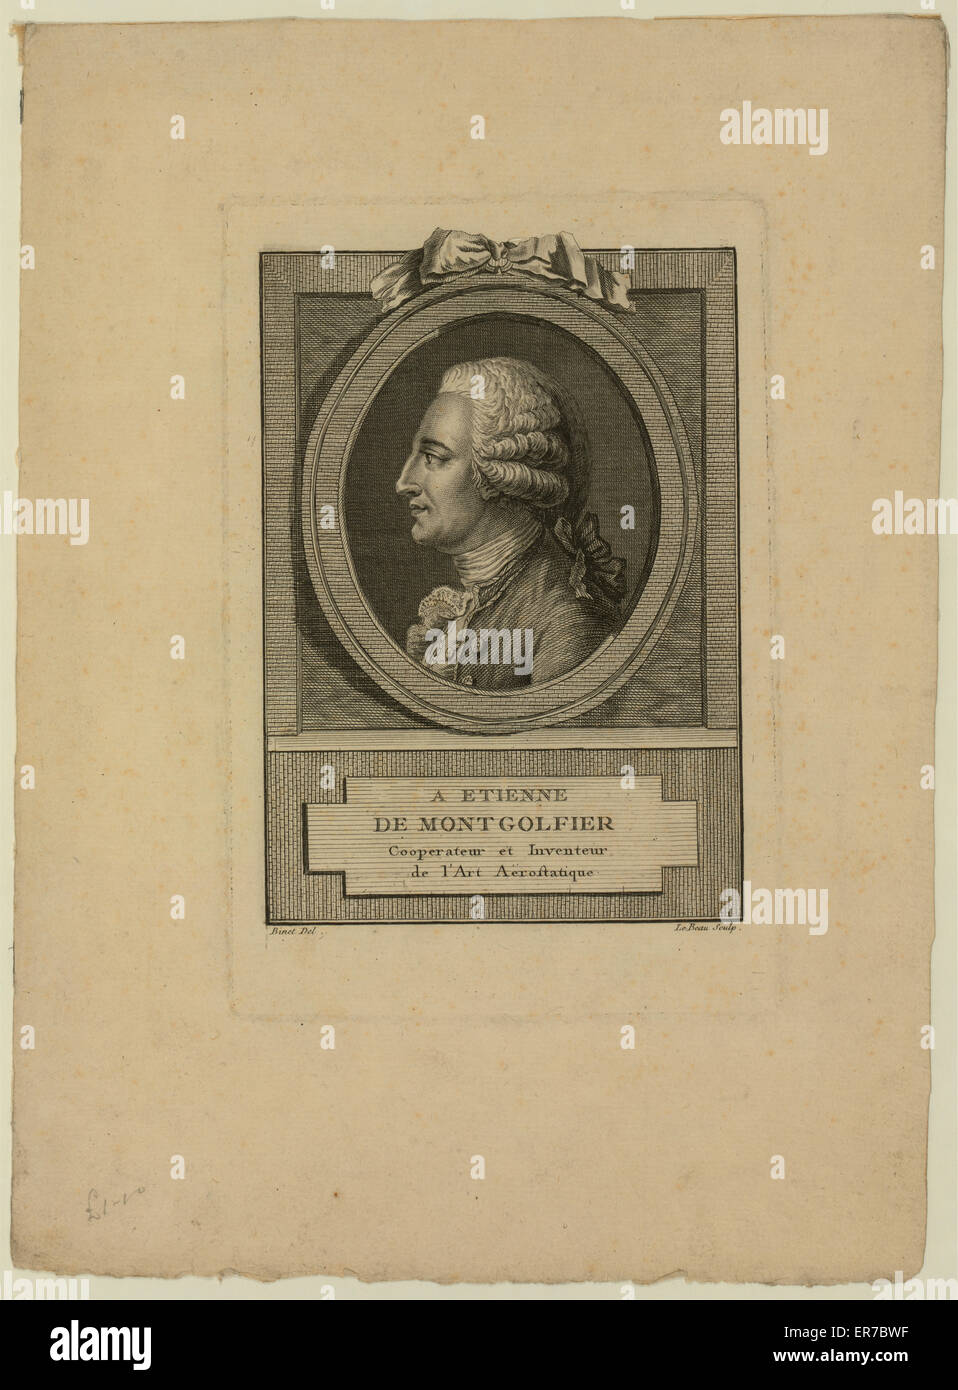 Ein Etienne de Montgolfier, Genosse und Erfinder der Kunst Stockfoto